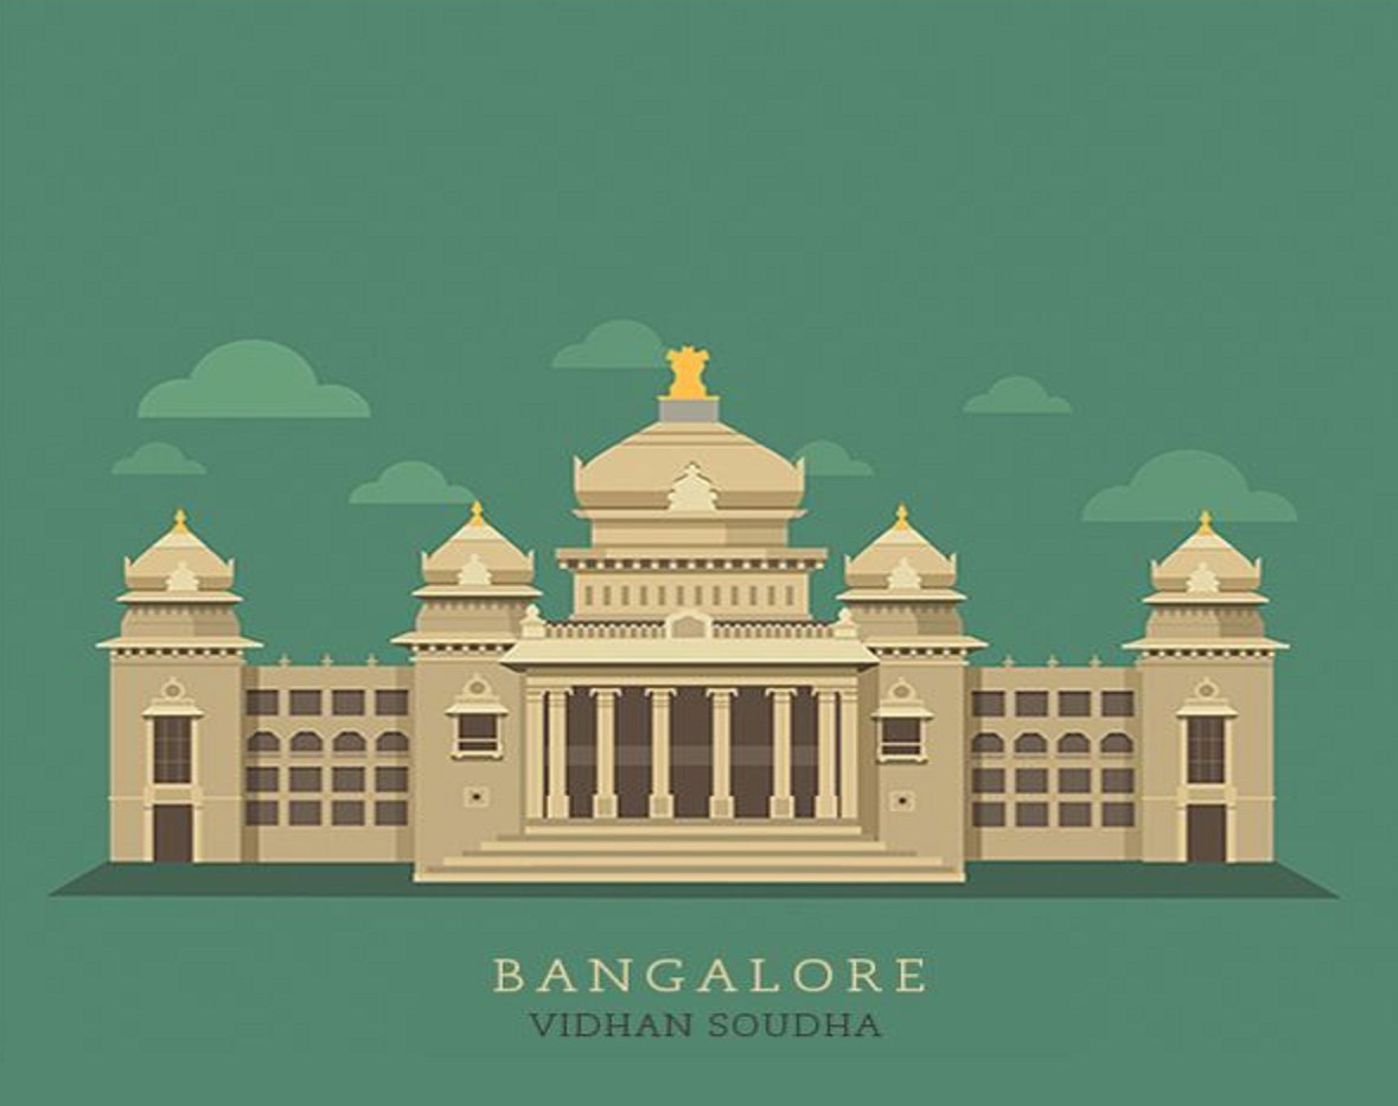 Bangalore india it Black and White Stock Photos & Images - Alamy